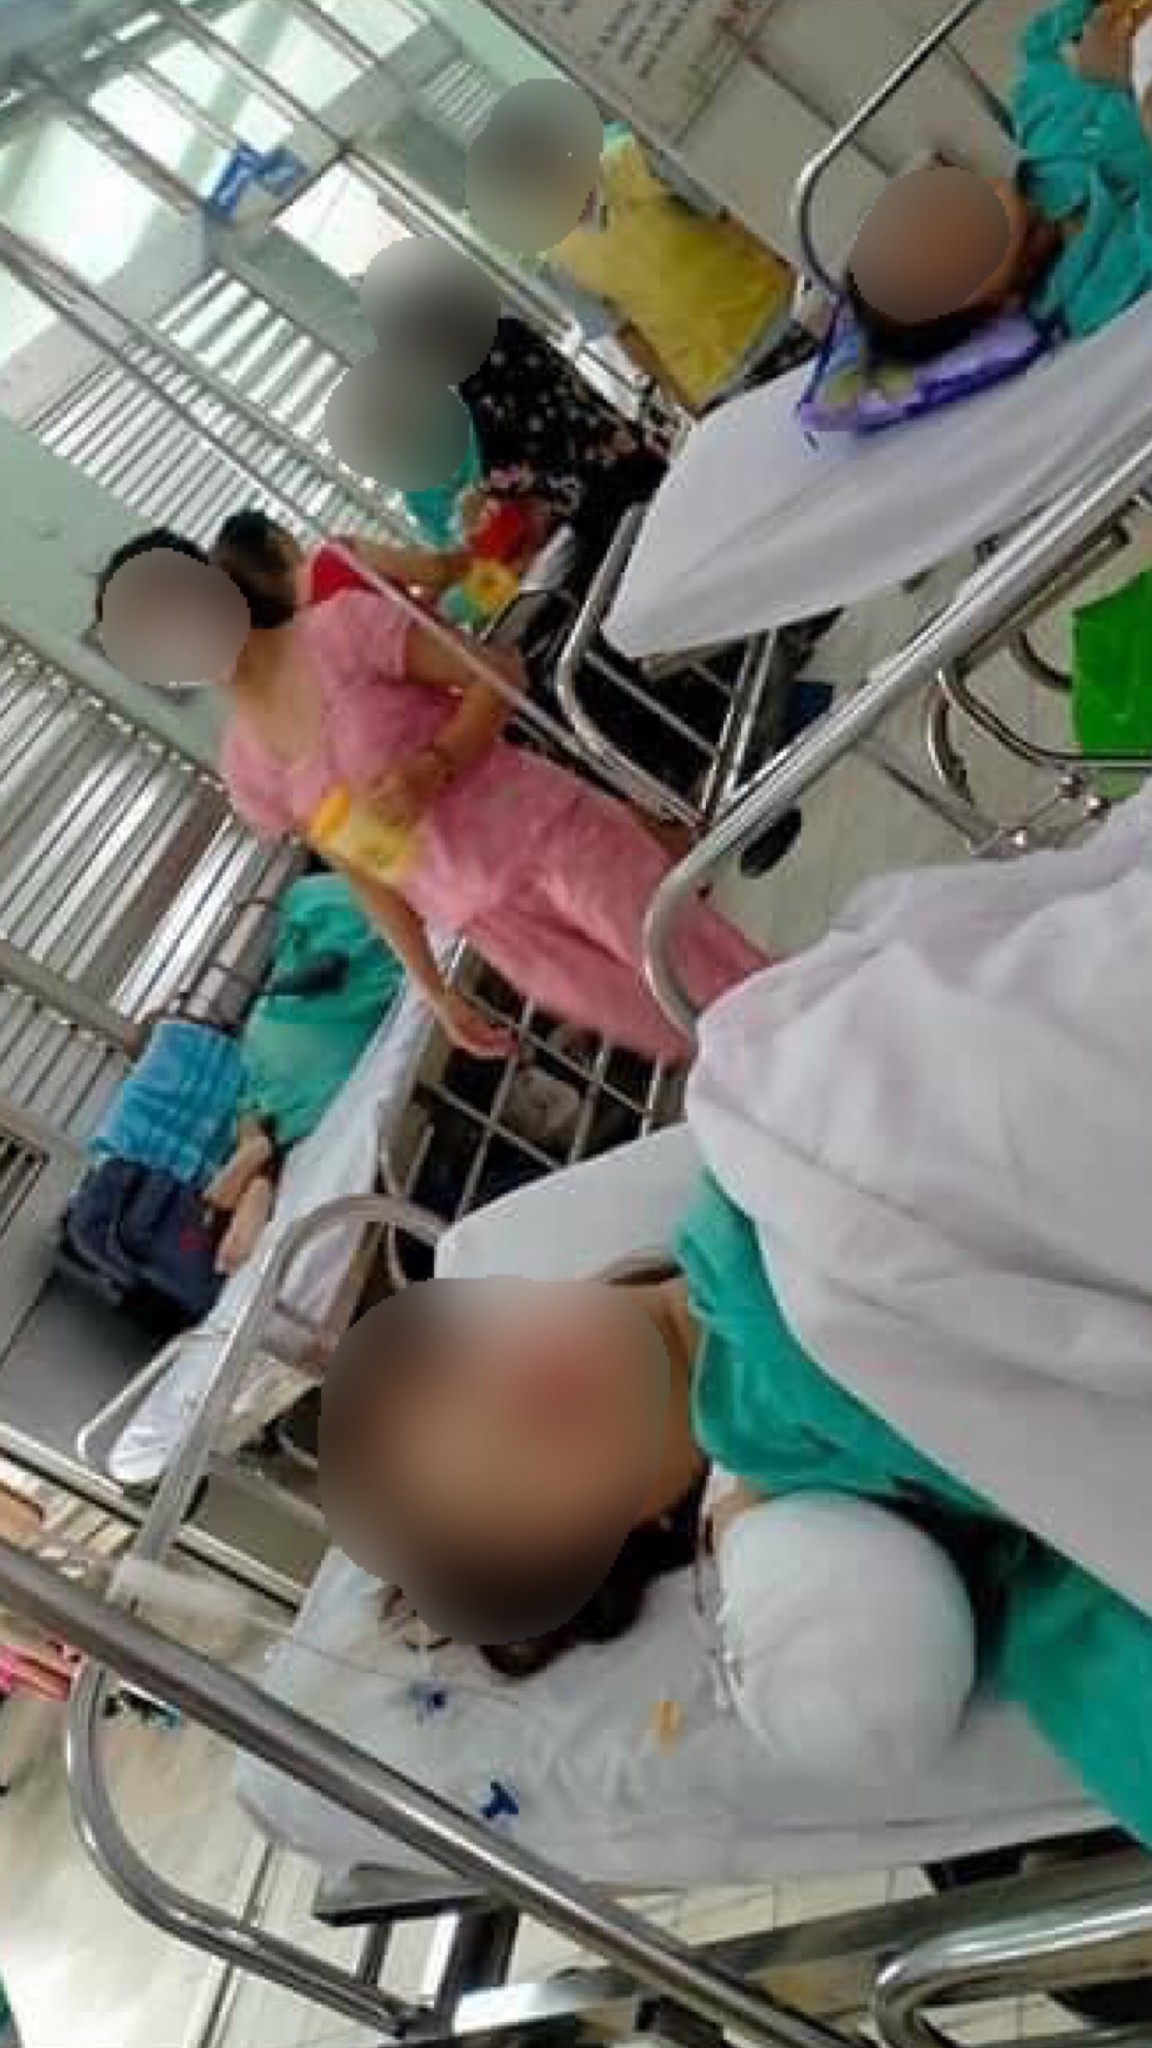 Nạn nhân hiện đã qua cơn nguy kịch, tạm ổn định sức khoẻ và đang điều trị tại Bệnh viện Chợ Rẫy (TP.HCM) chờ phẫu thuật.